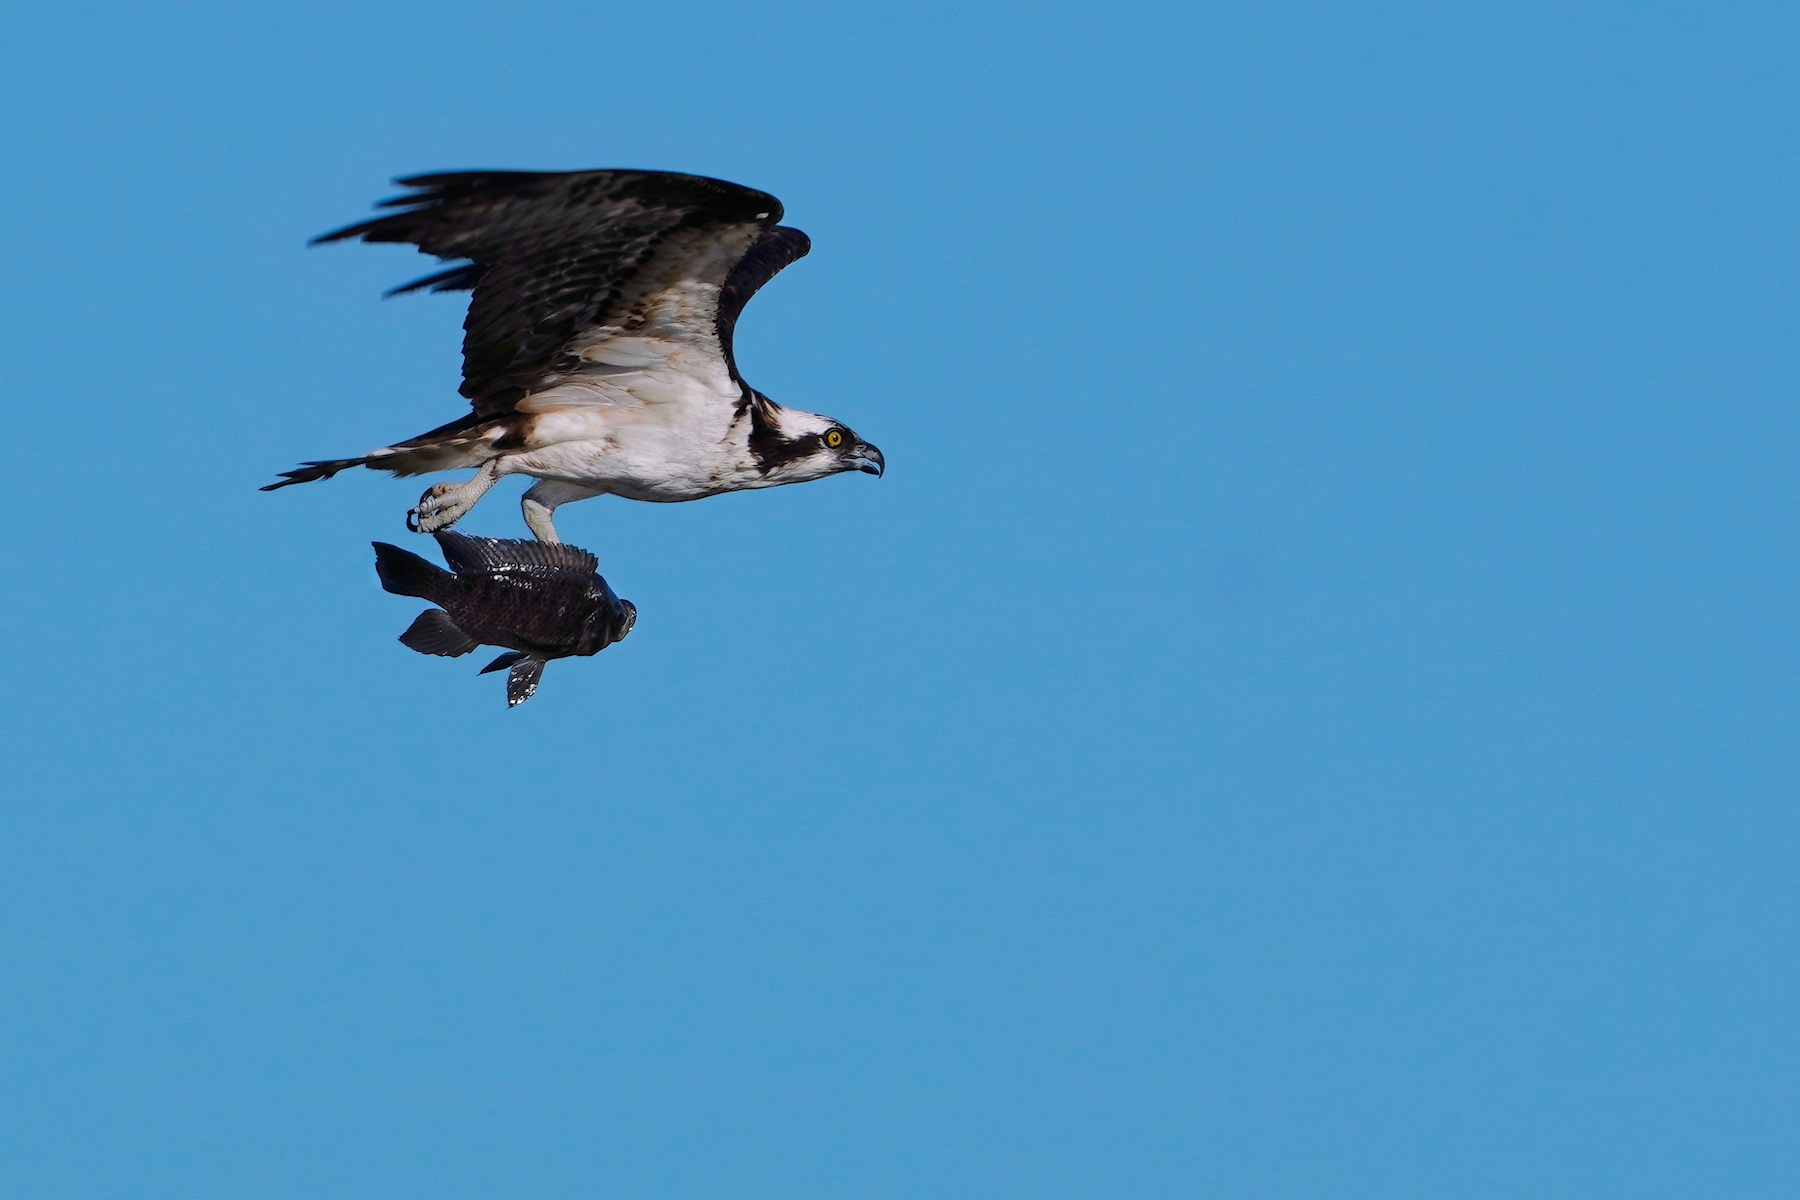 Osprey with fish catch